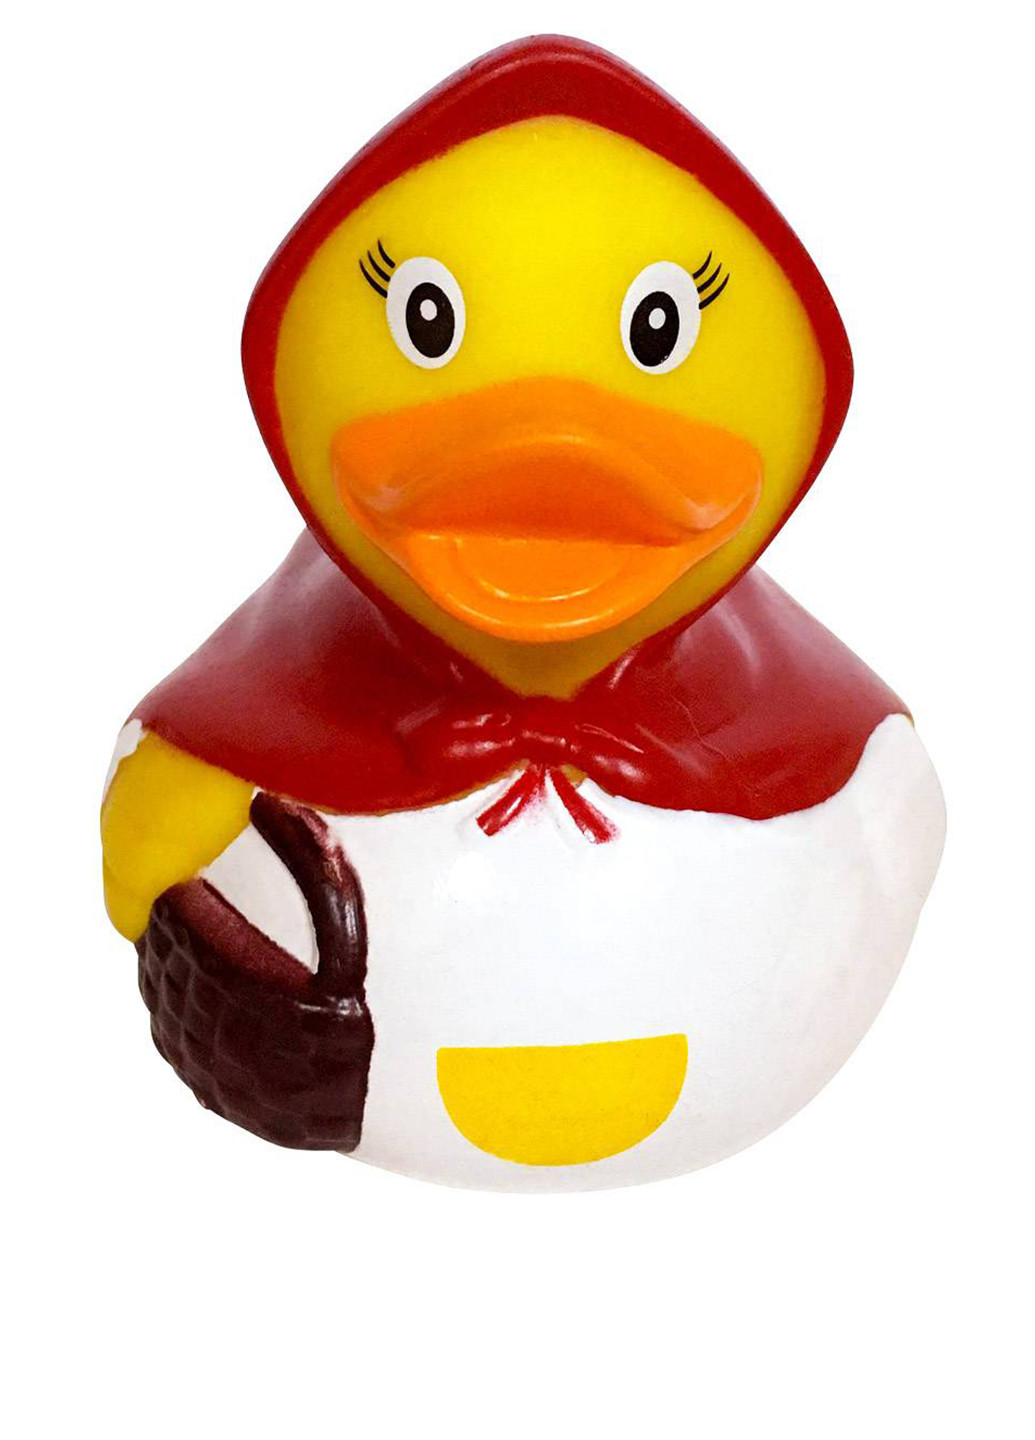 Игрушка для купания Утка Красная шапочка, 8,5x8,5x7,5 см Funny Ducks (250618746)